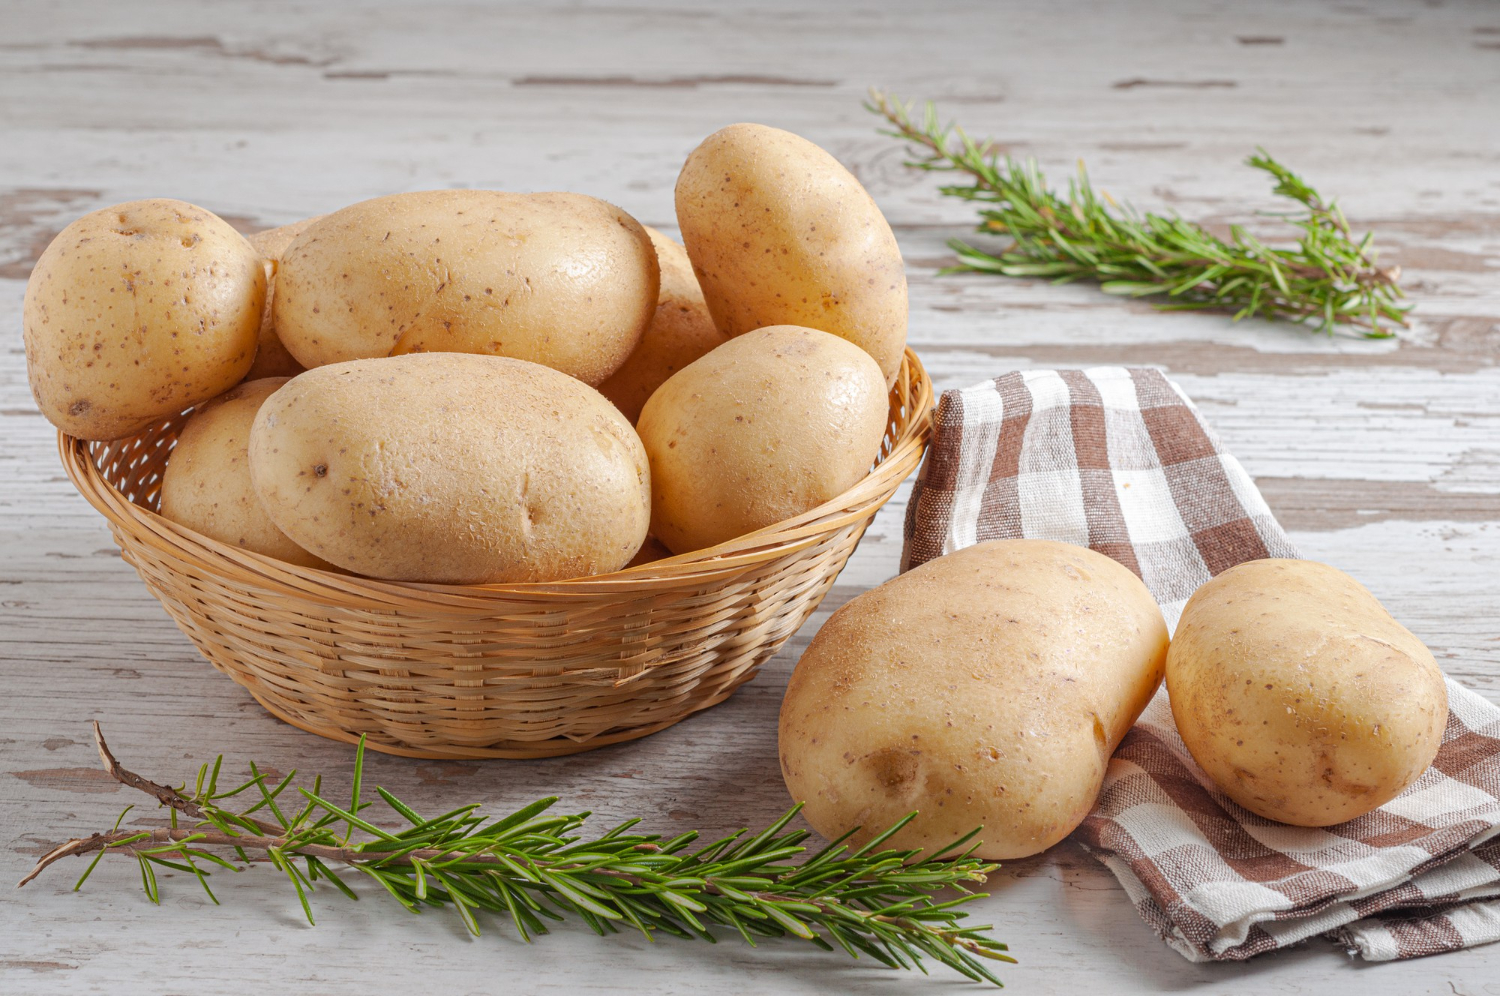  Bulvių simpatija: žinokite 6 galingiausius LOVE